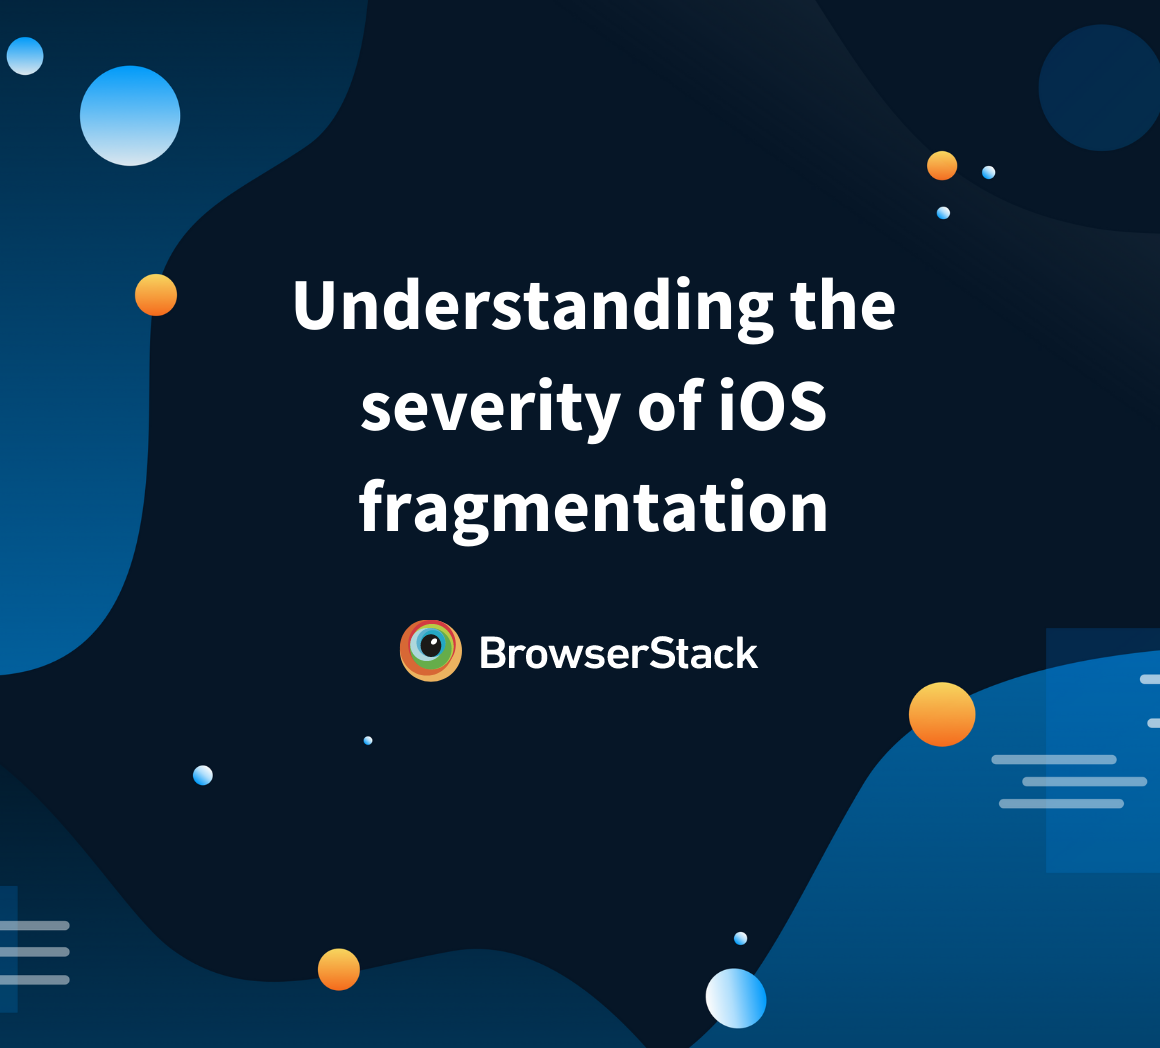 iOS fragmentation